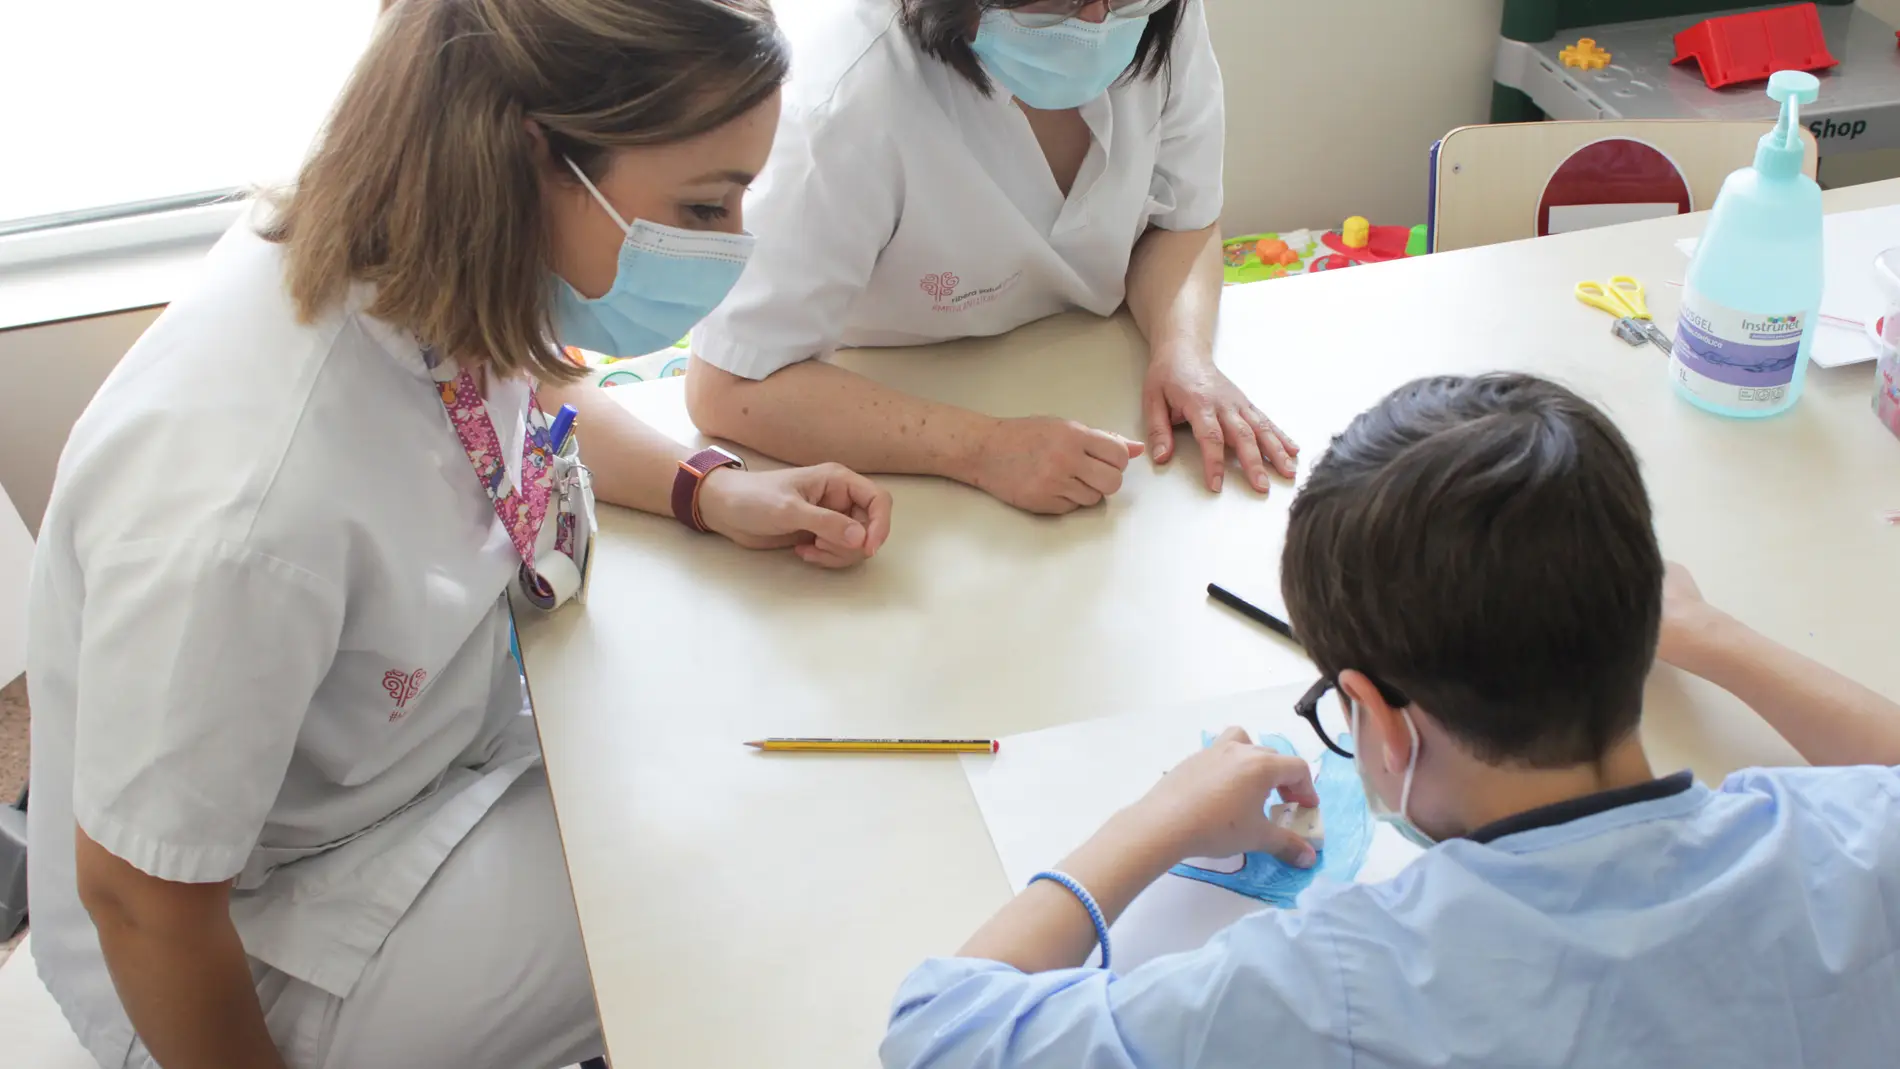 El Hospital del Vinalopó y la Fundación Salud Infantil colaboran para mejorar la atención de los más pequeños de Elche.